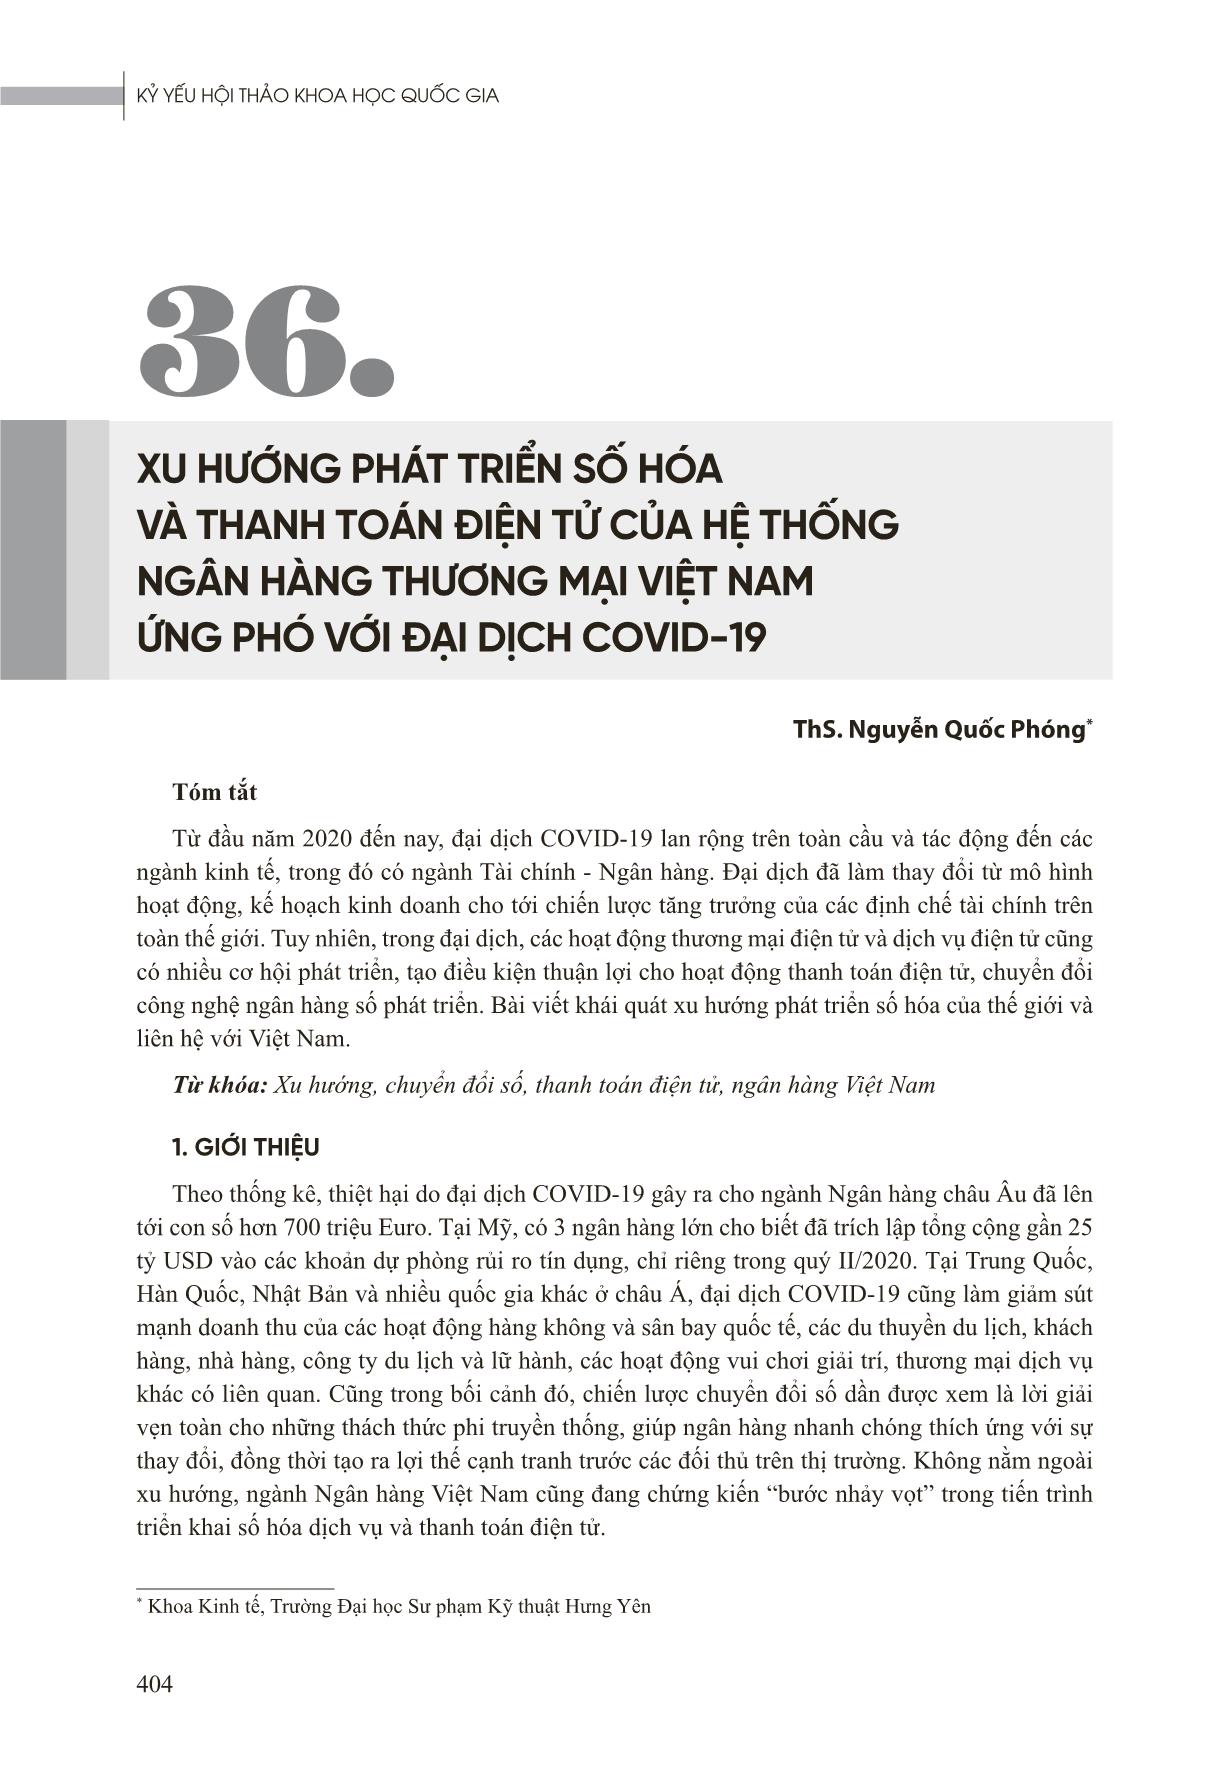 Xu hướng phát triển số hóa và thanh toán điện tử của hệ thống ngân hàng thương mại Việt Nam ứng phó với đại dịch Covid-19 trang 1